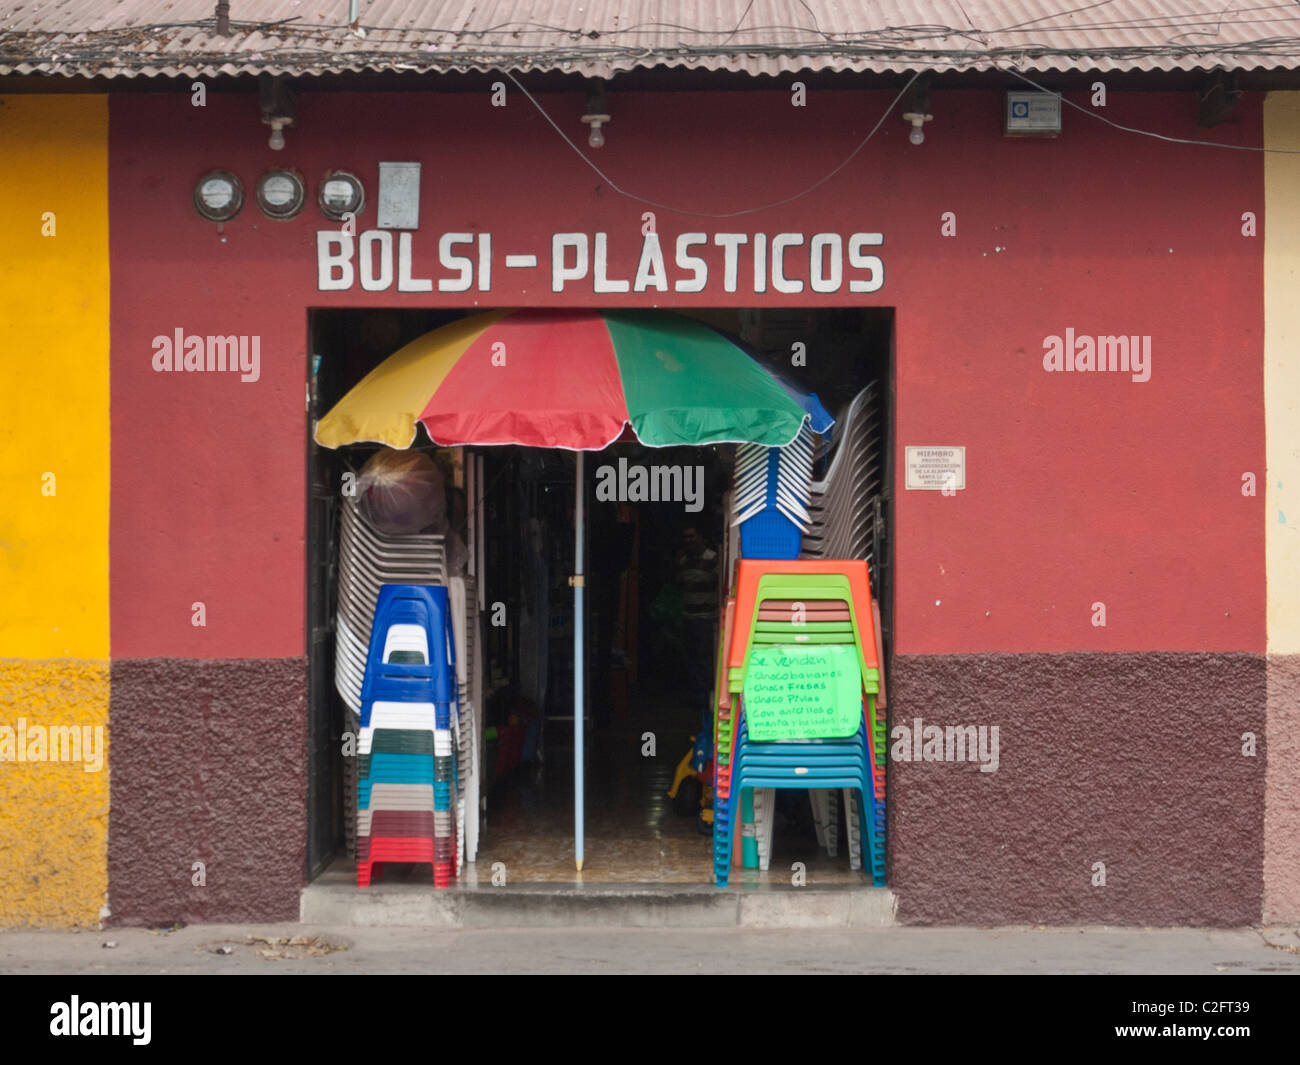 Los colores de la puerta de entrada de una tienda que vende muebles de plástico en Antigua, Guatemala. Foto de stock